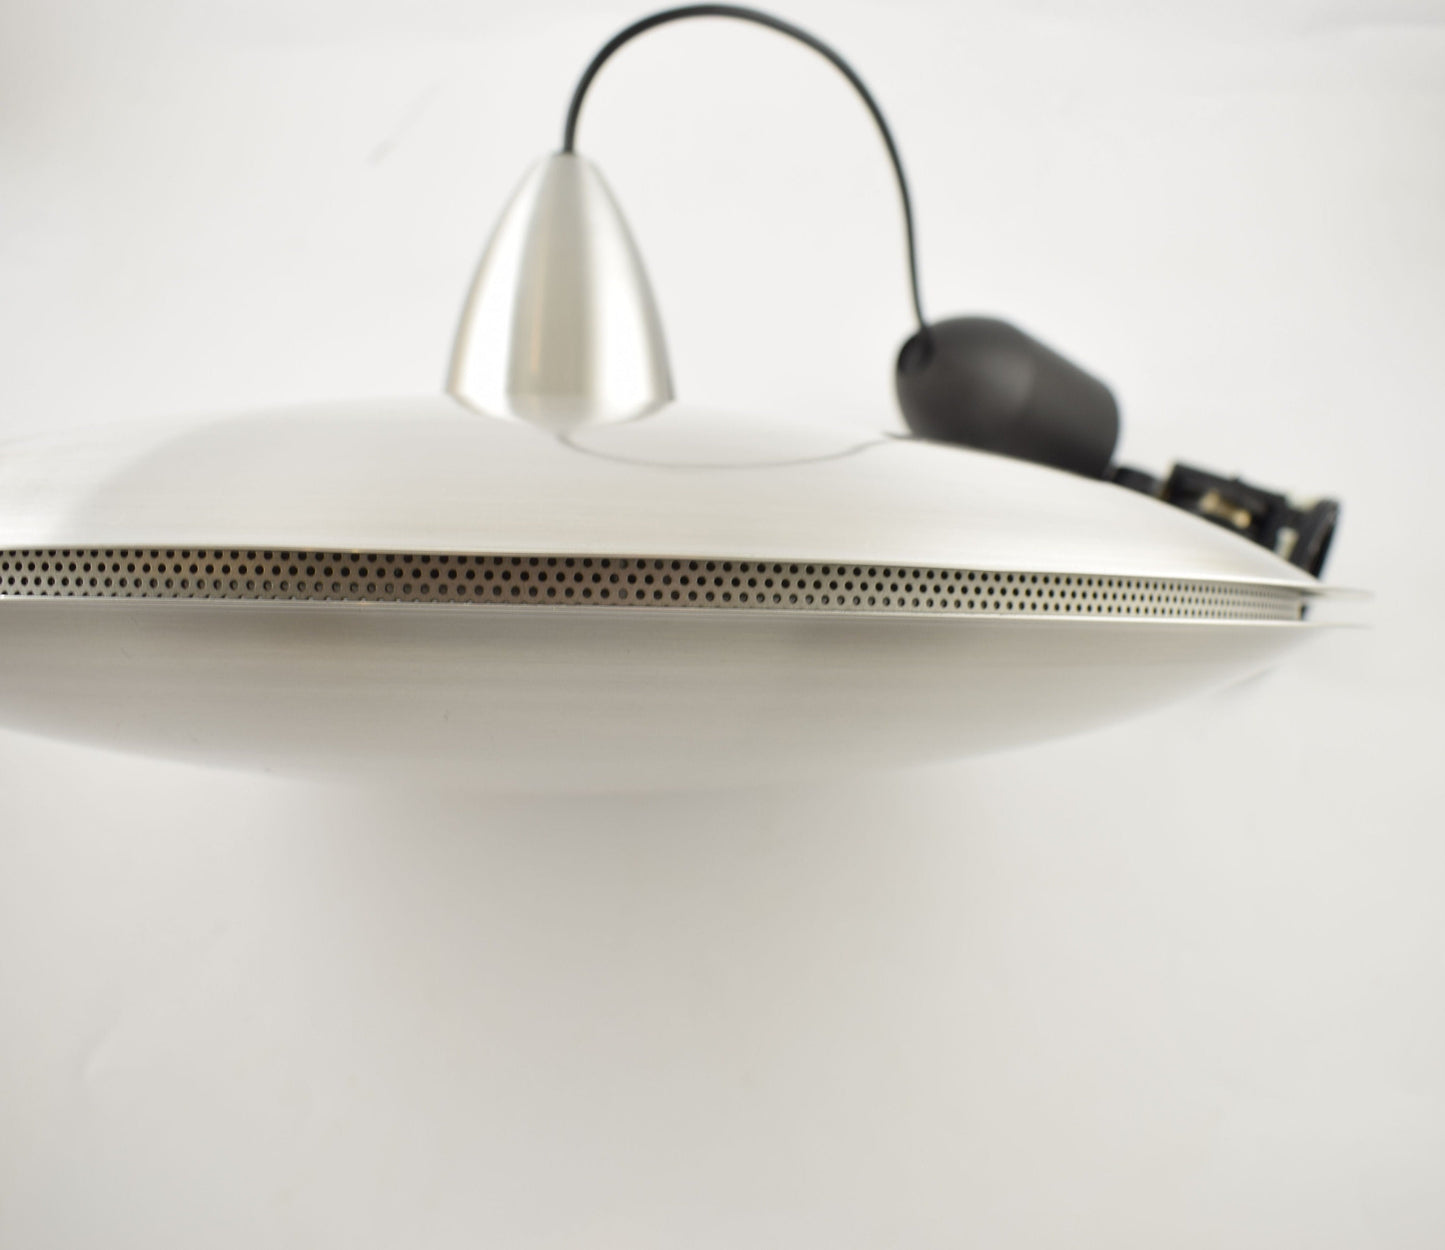 Hala design grote aluminium hanglamp in de vorm van een ufo van het Nederlandse ontwerpbureau Hala.